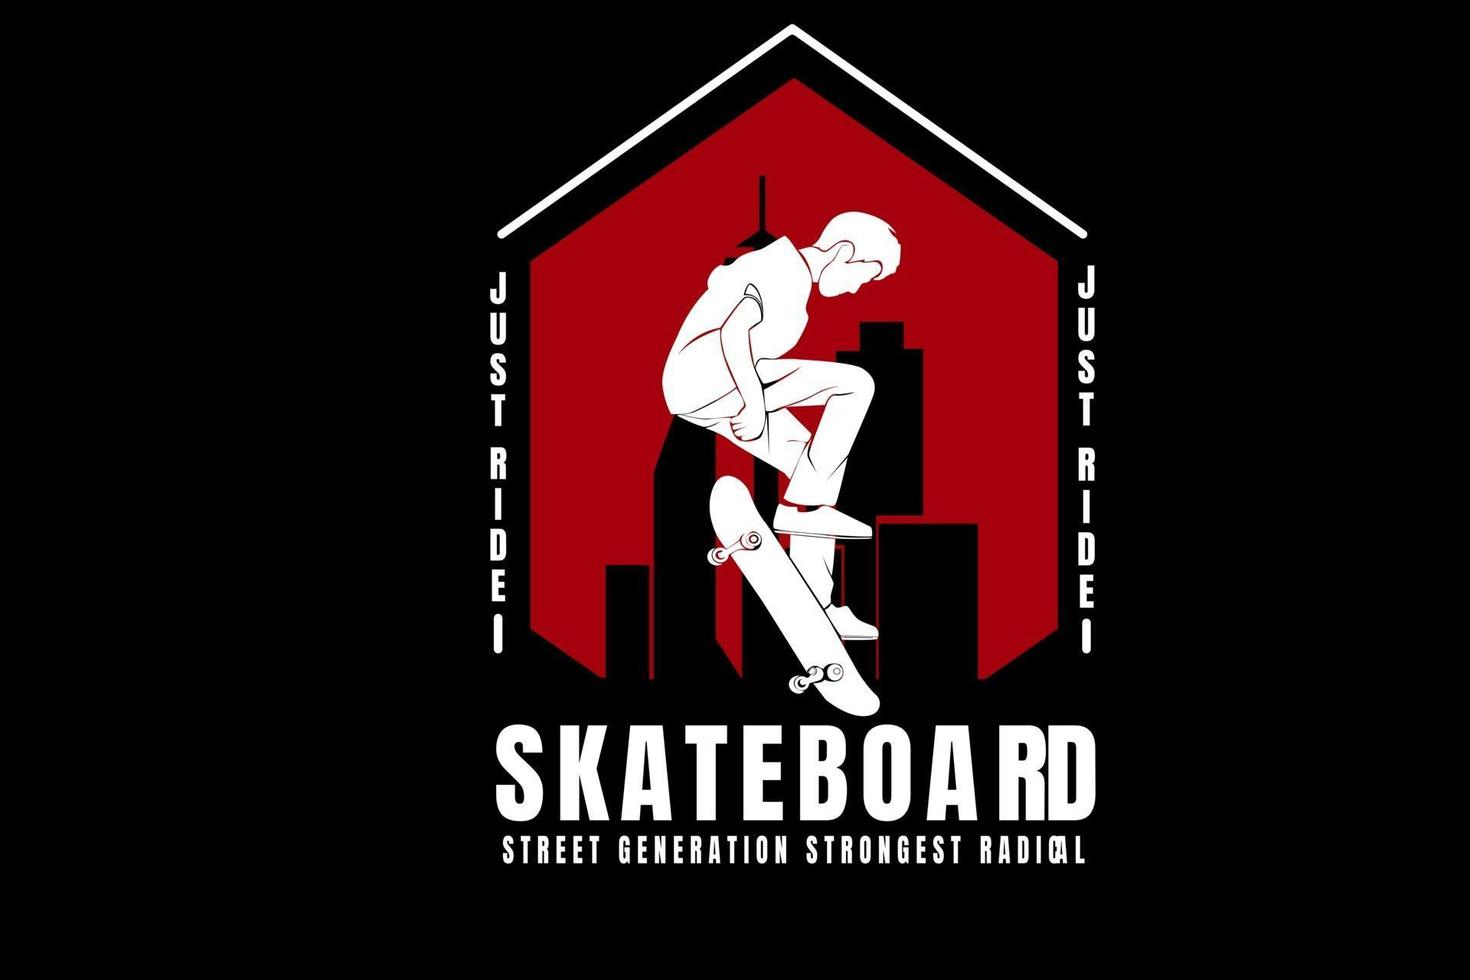 basta guidare lo skateboard street generation più forte colore radicale bianco e rosso vettore